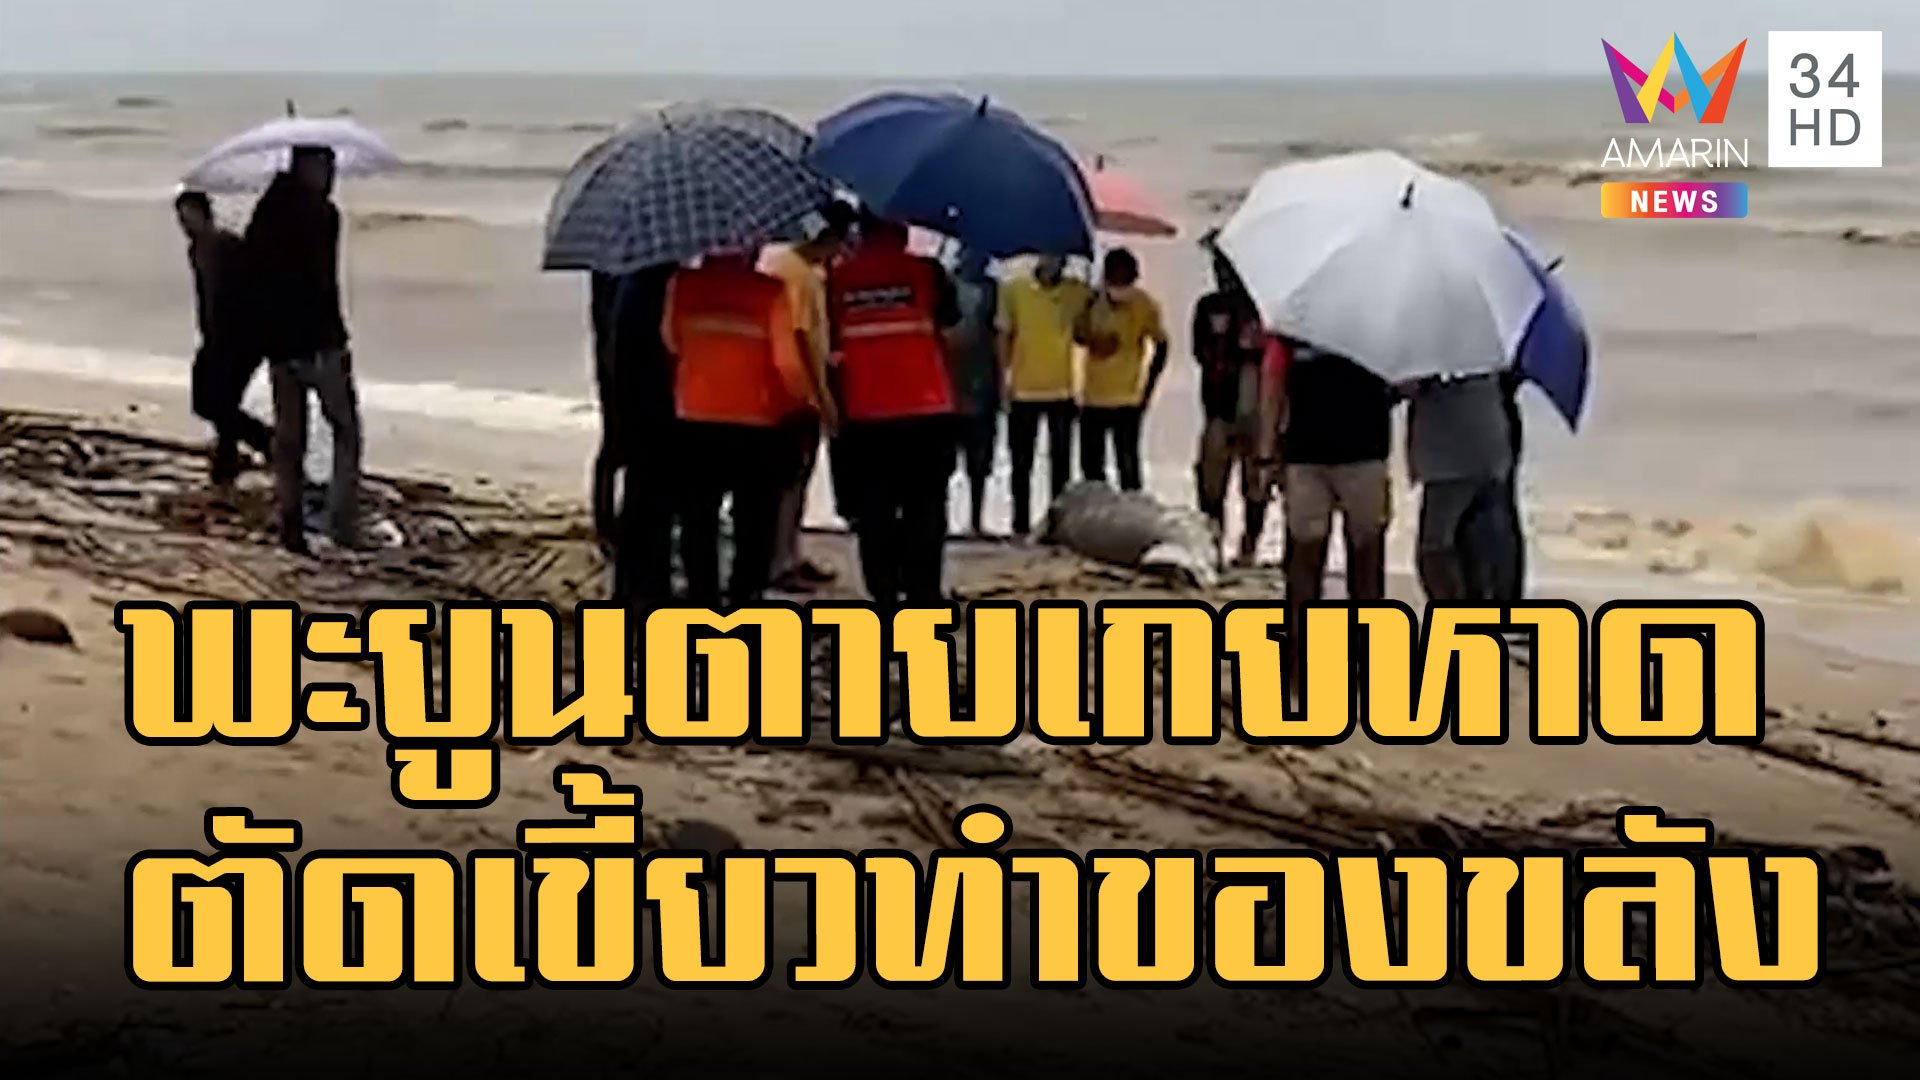 สลด ซากพะยูนเกยหาด ถูกตัดเขี้ยวทำของขลัง | ข่าวอรุณอมรินทร์ | 5 ธ.ค. 65 | AMARIN TVHD34